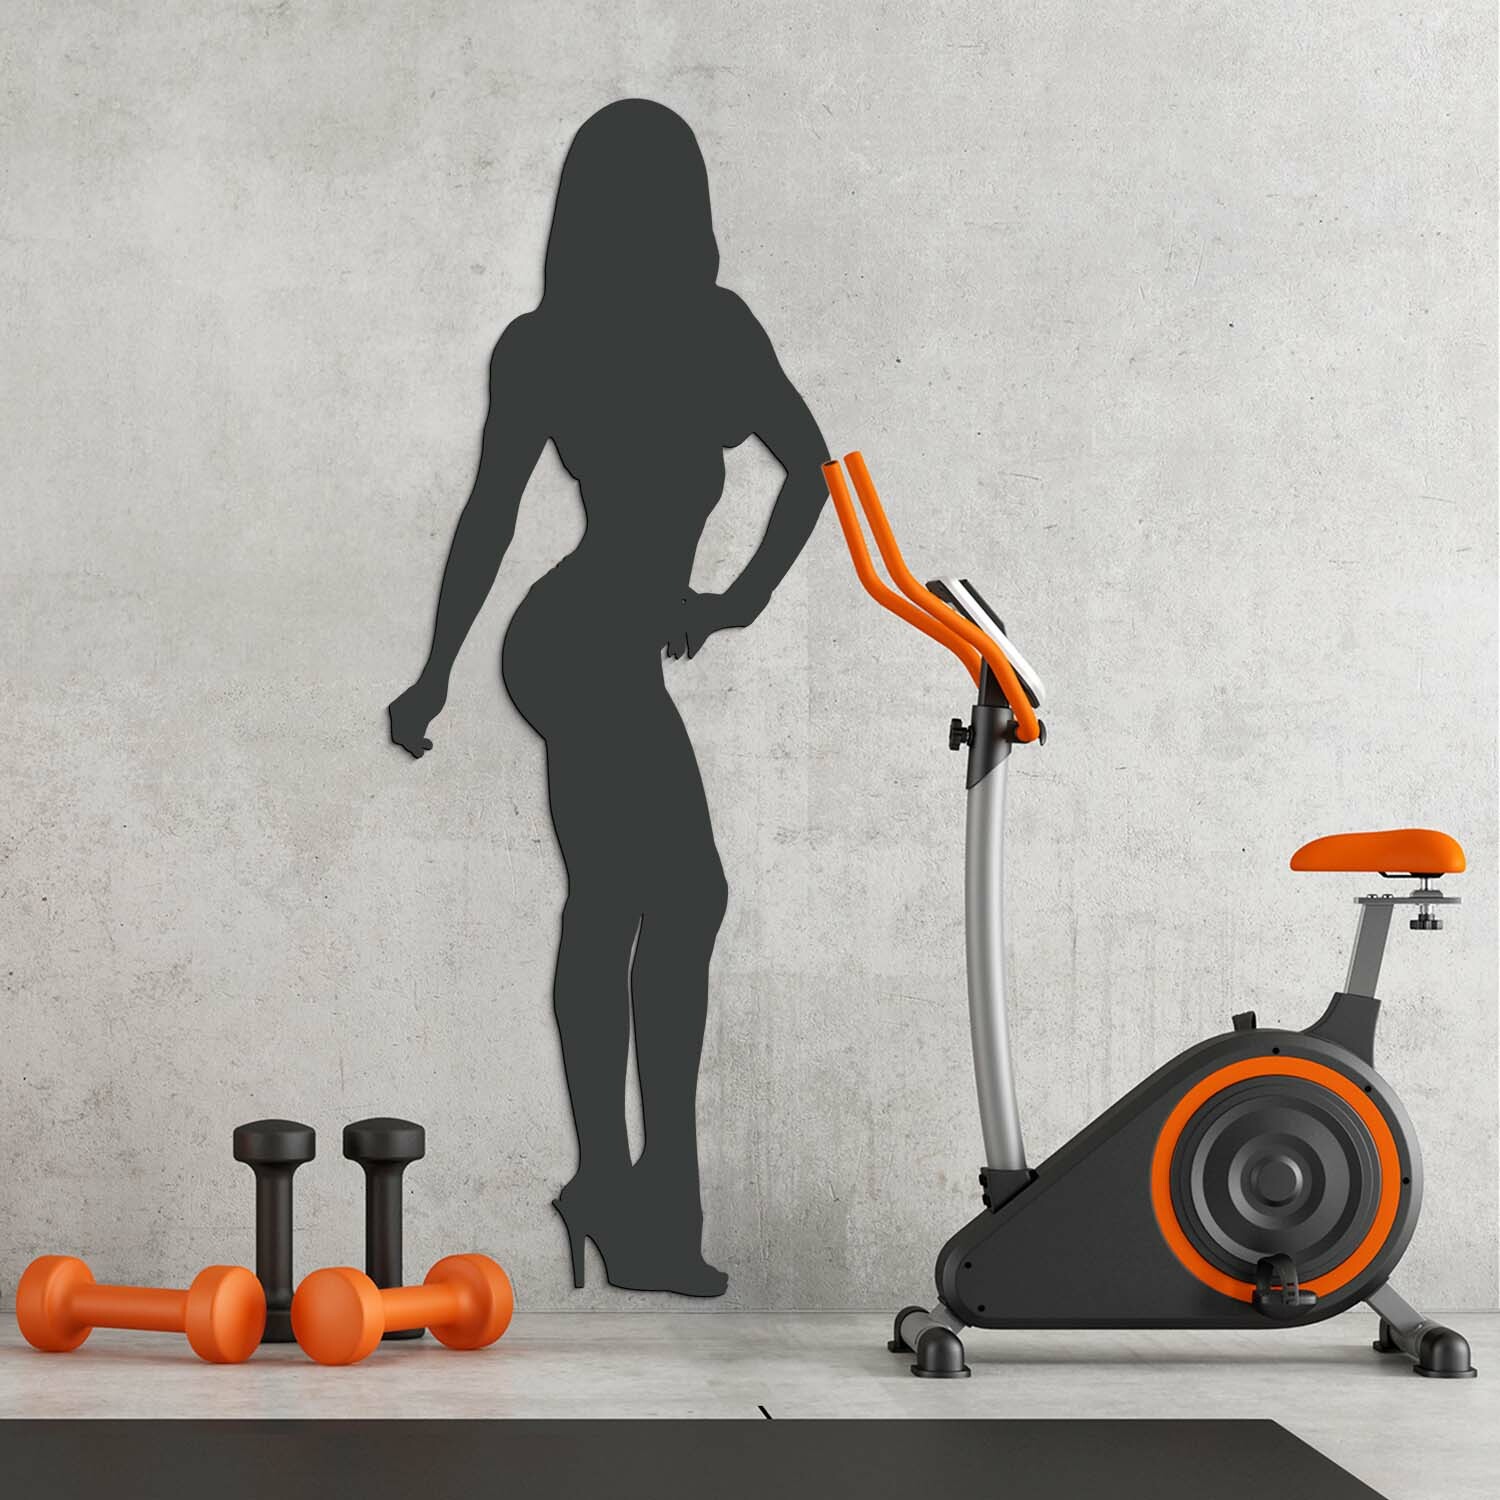 Dárek pro ženu - Obraz bikiny fitness